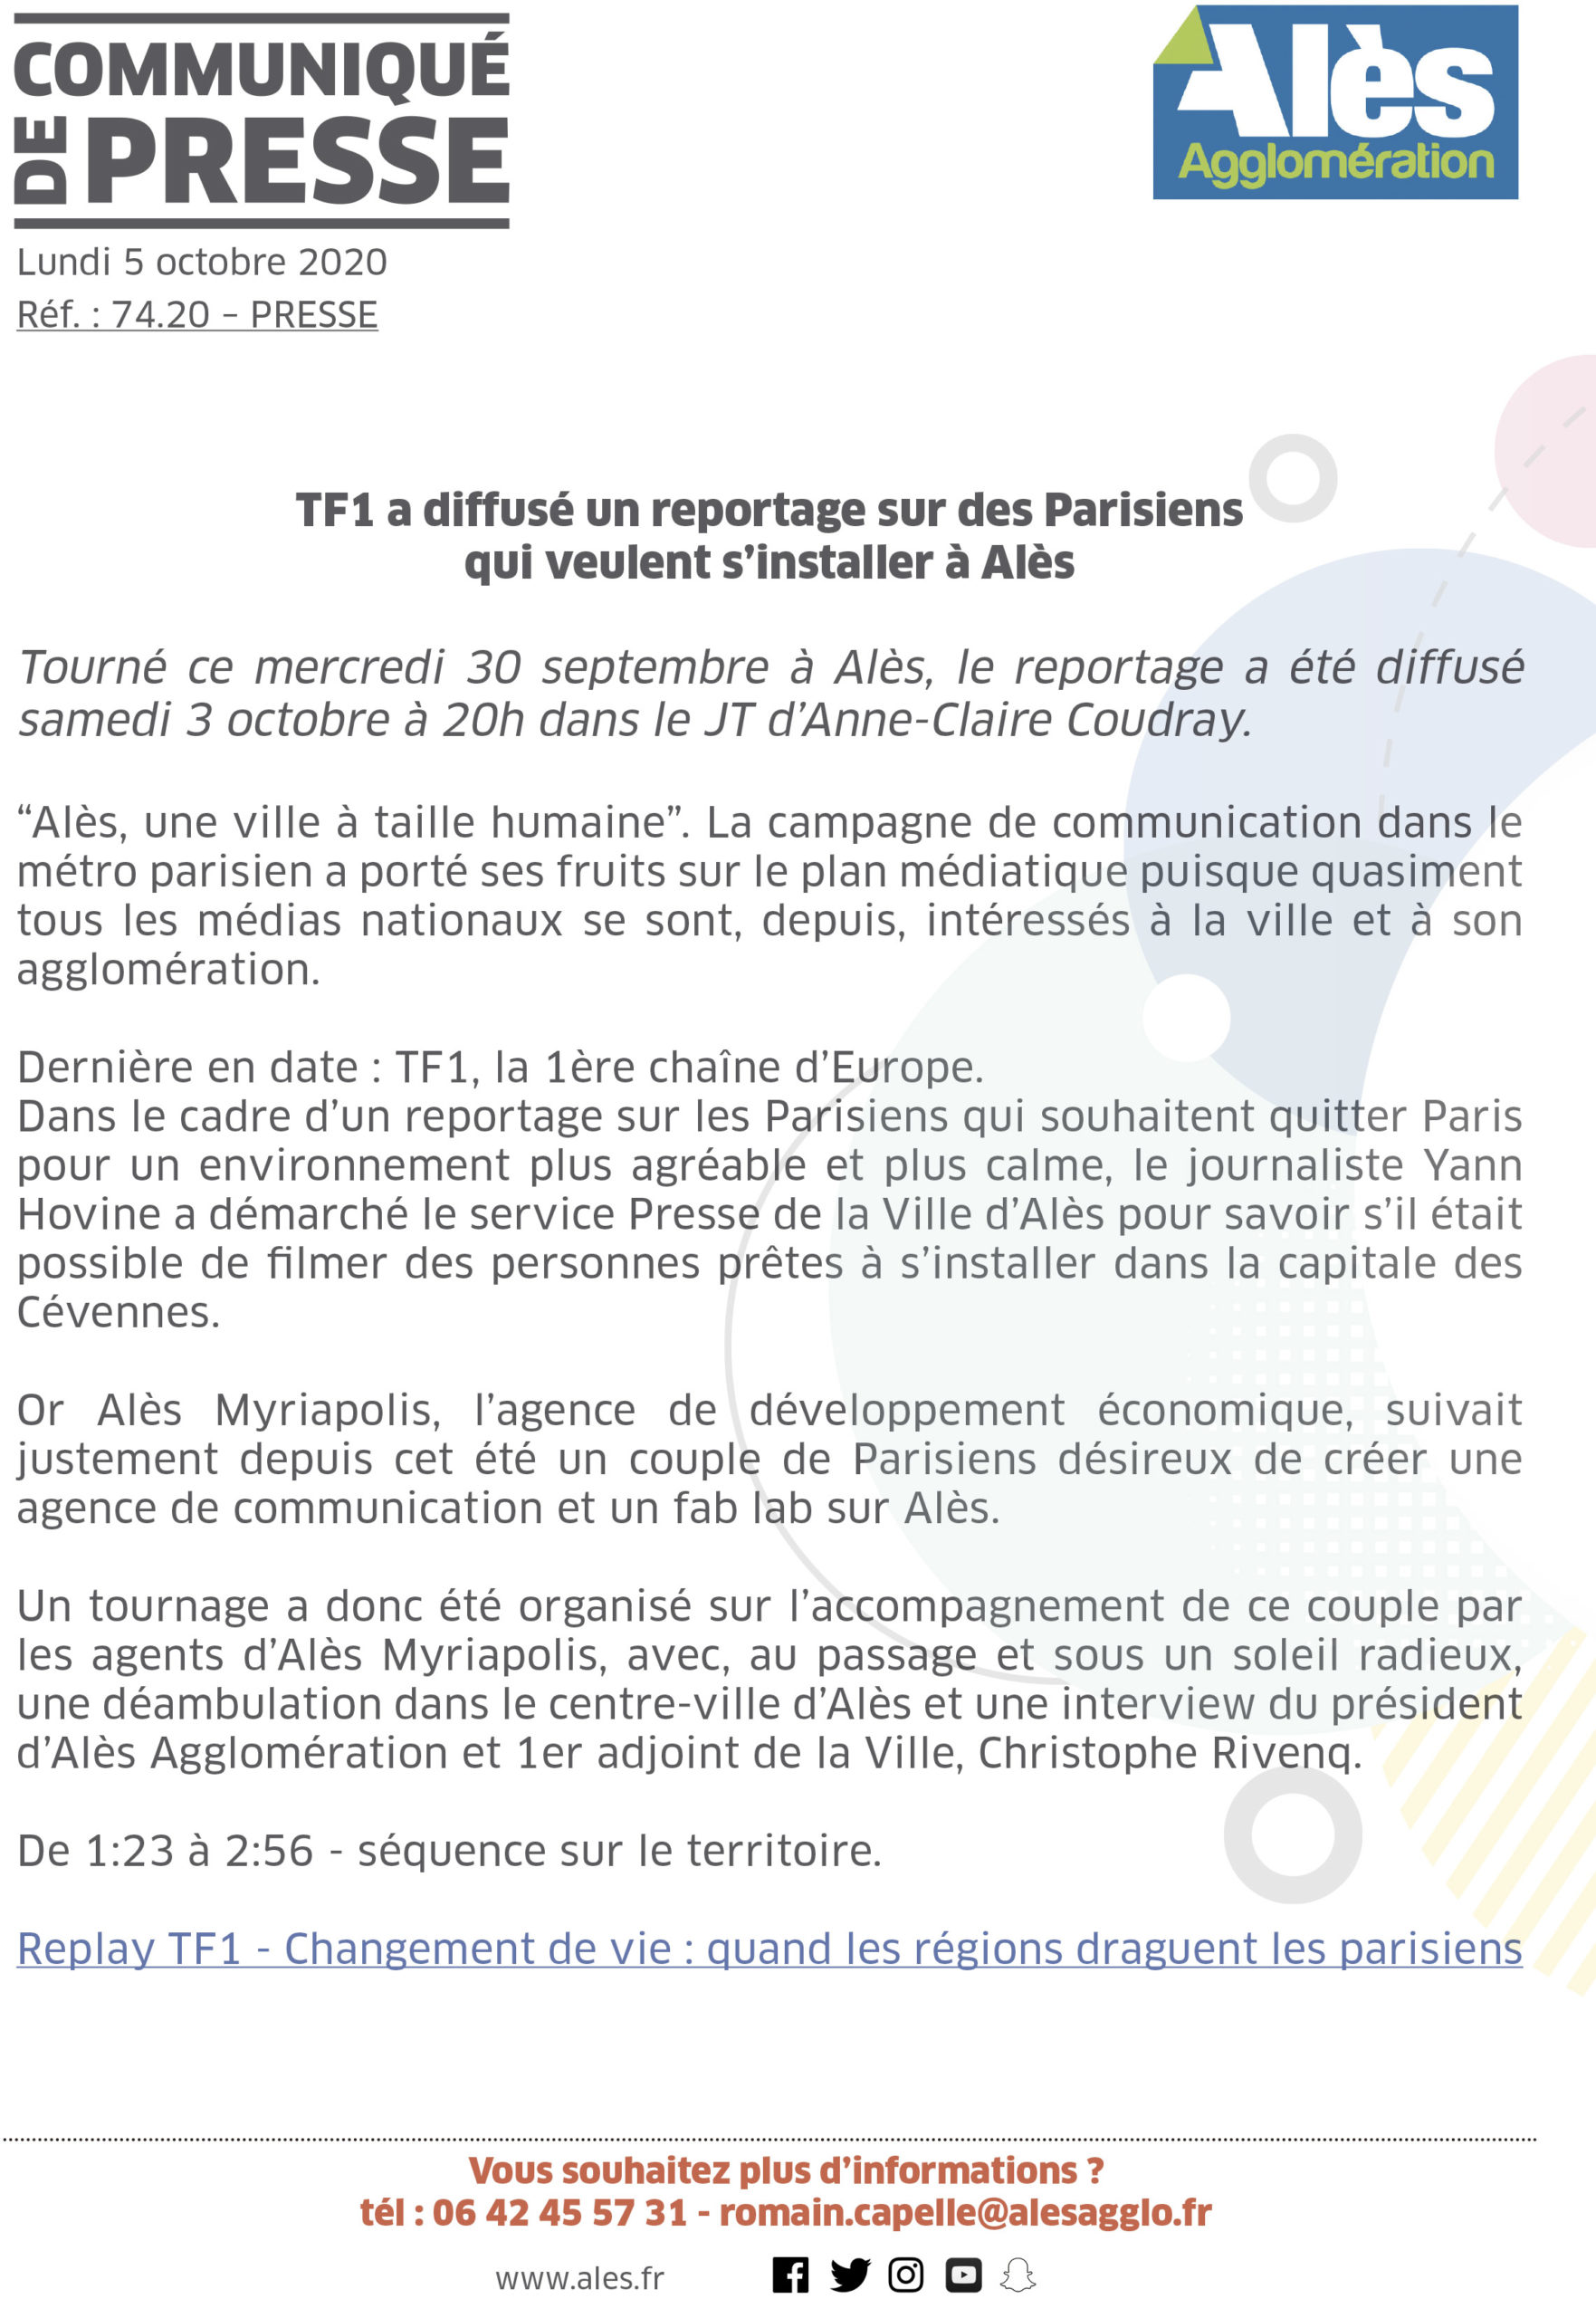 COMMUNIQUÉ DE PRESSE – TF1 a diffusé un reportage sur des Parisiens qui veulent s’installer à Alès